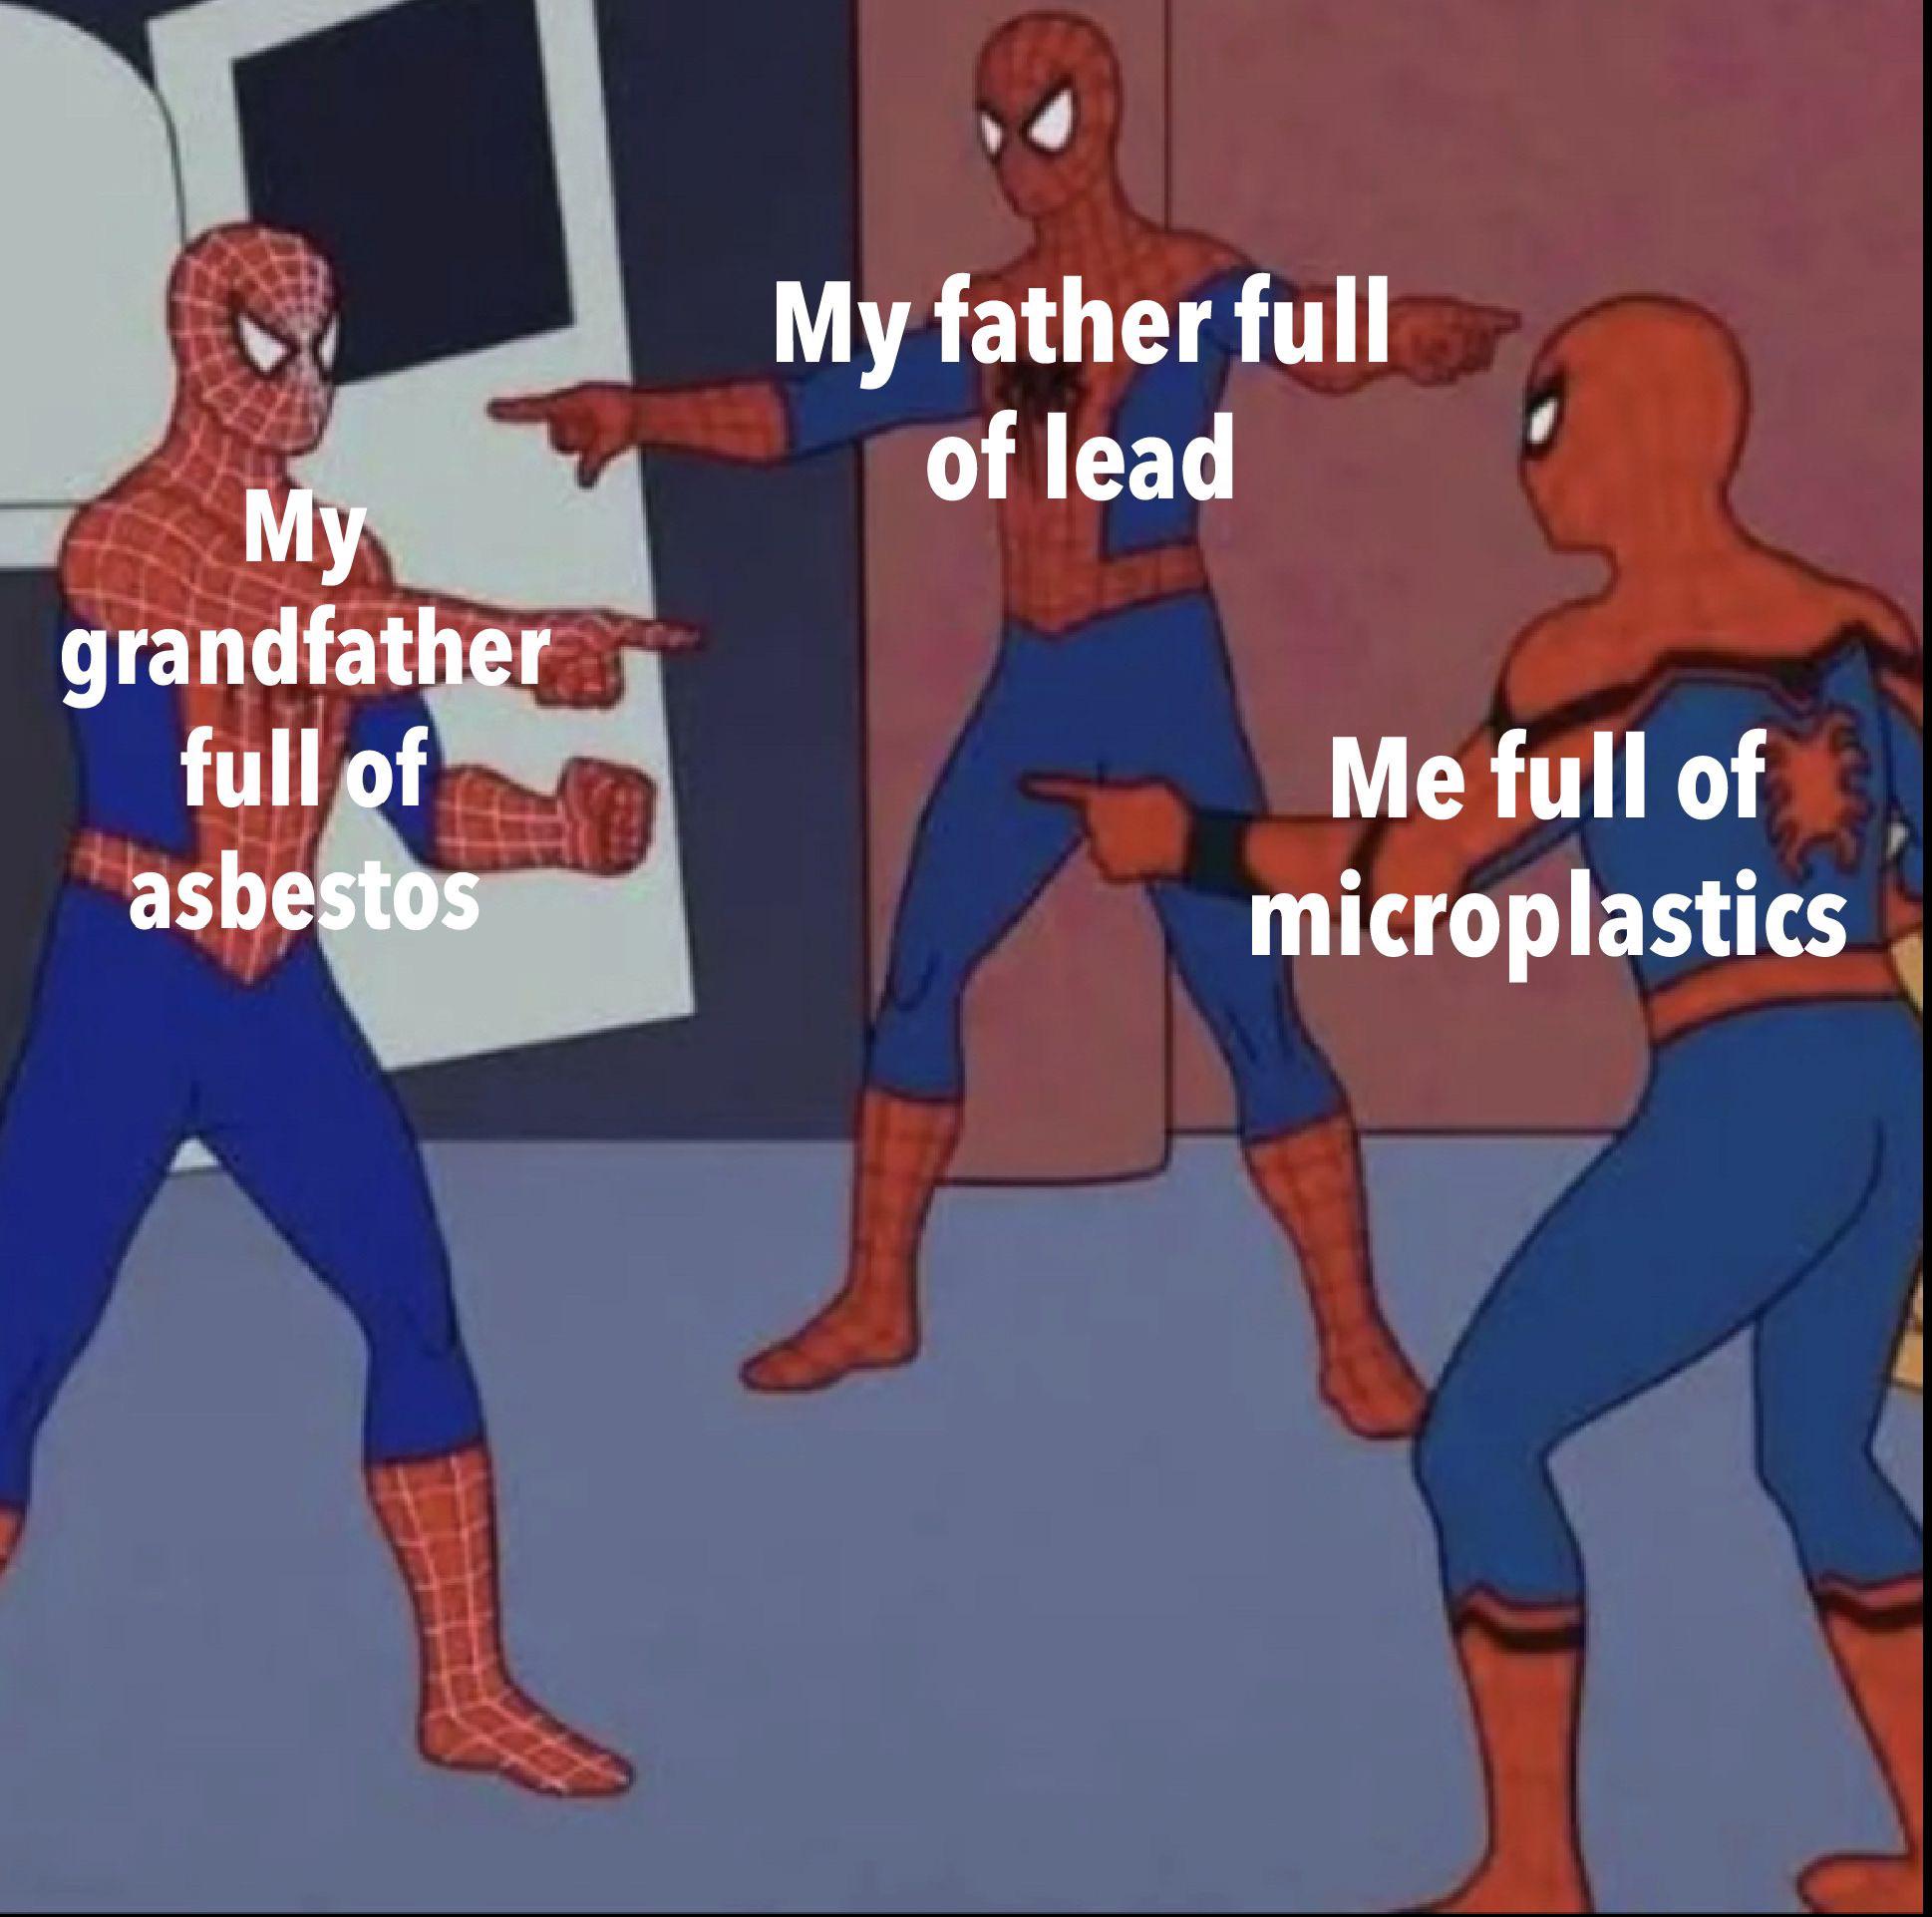 dank memes  - cartoon - My grandfather full of asbestos My father full of lead Me full of microplastics